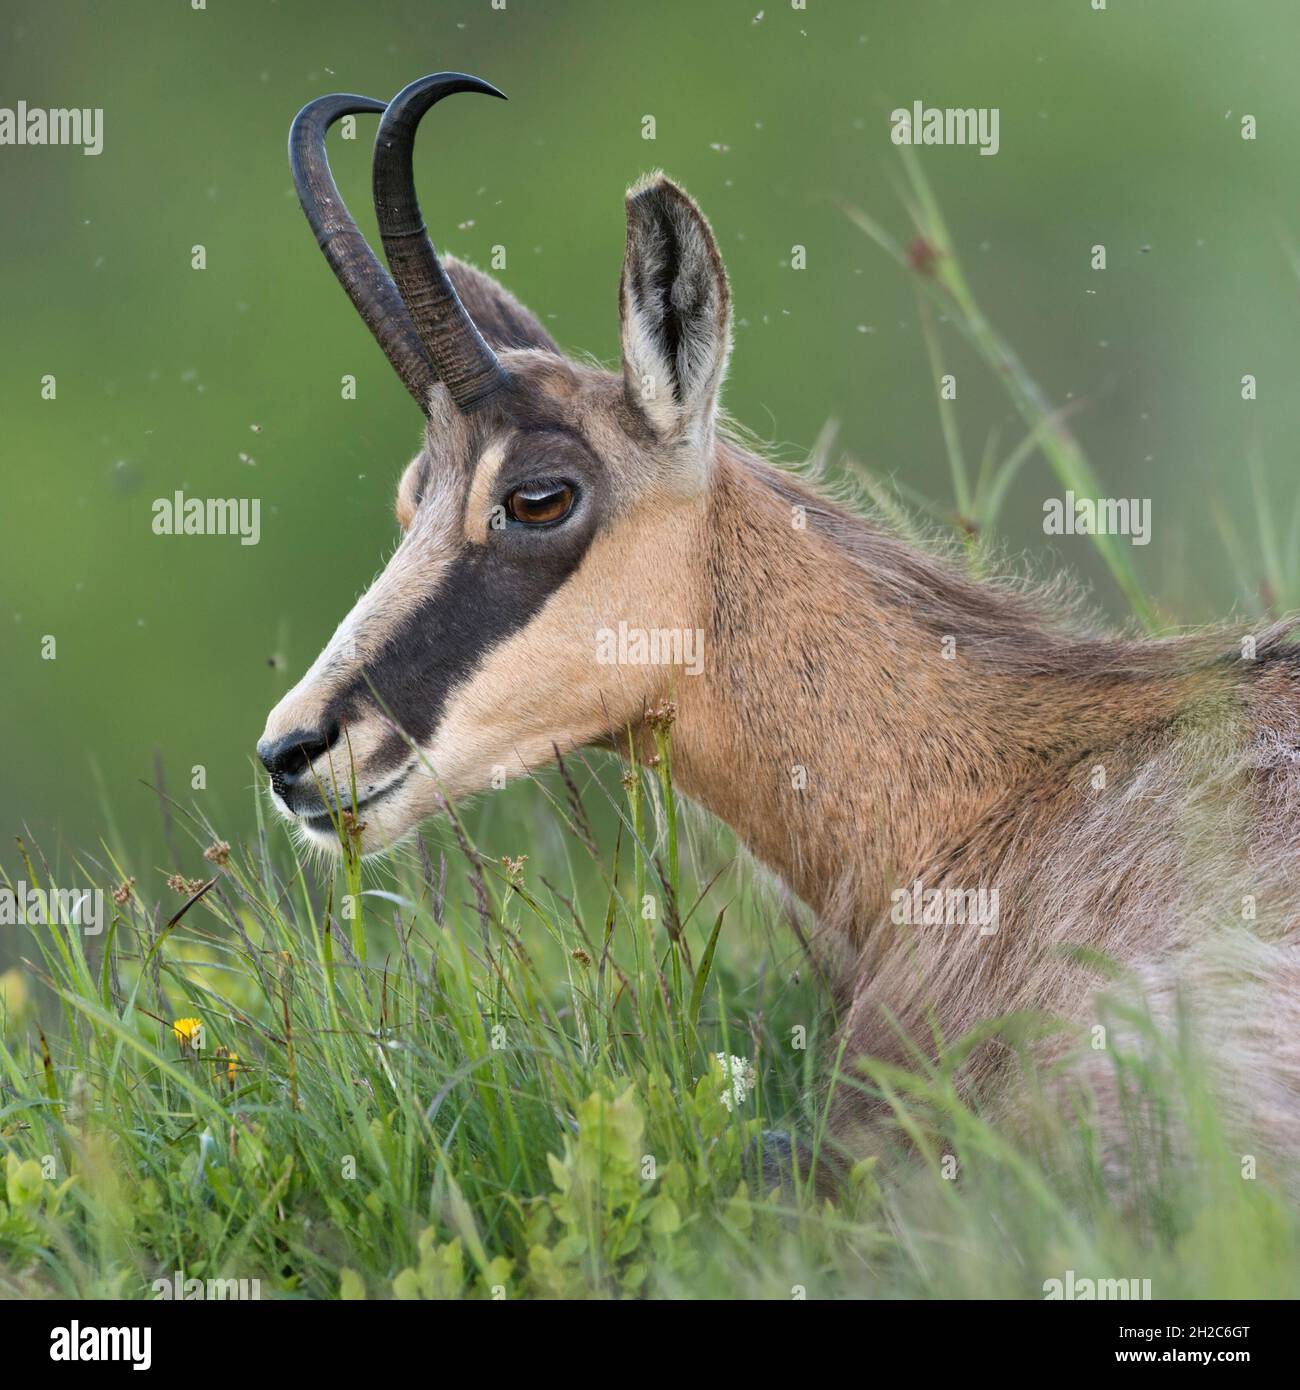 Chamois alpino ( Rupicapra rupicapra ) acostado en hierba verde fresca de un prado alpino, rumiando, descansando sobre el día, tiro de cabeza detallado, cerca, wil Foto de stock